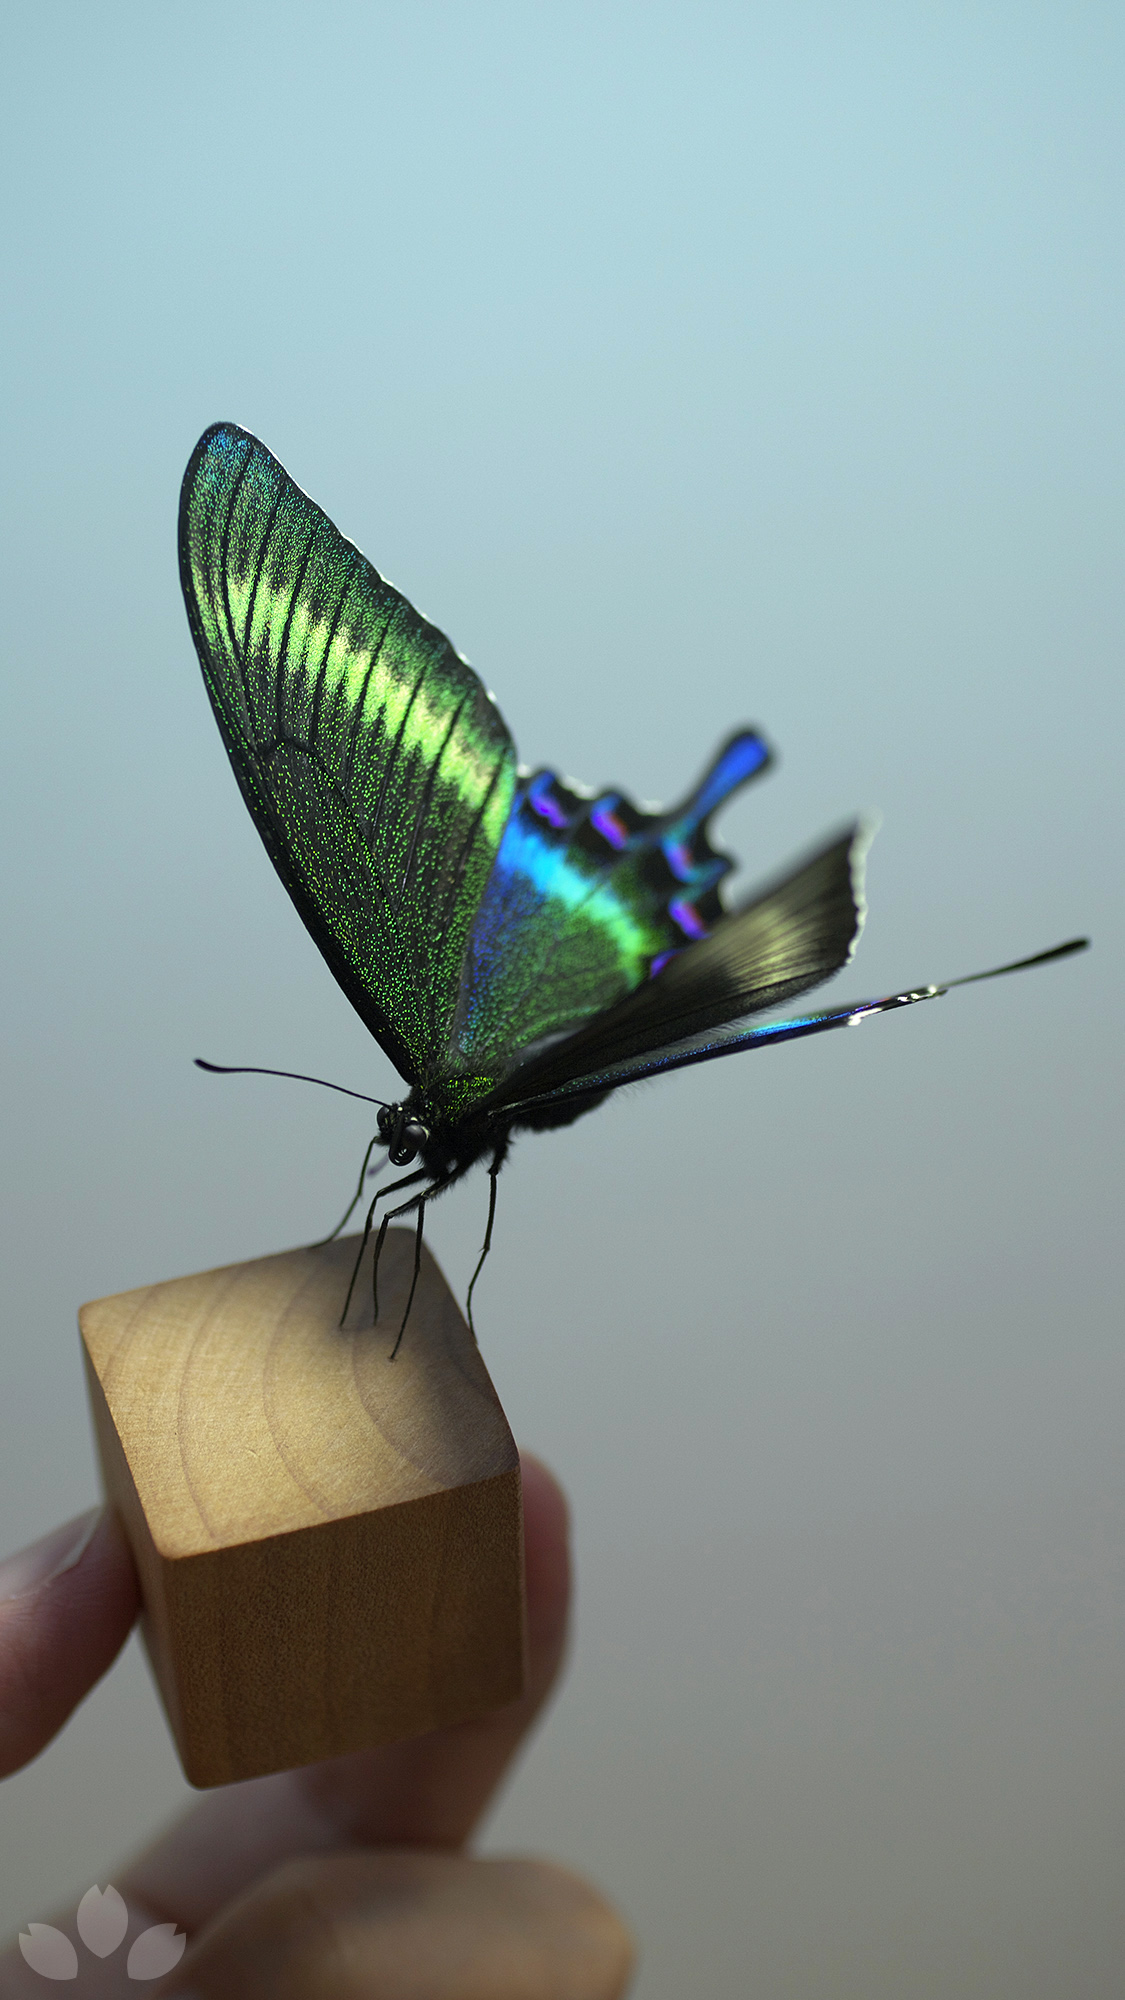 山﨑 理 Yamazaki Osamu ピンを使わず 脚だけで固定する蝶やその他昆虫の標本を作っています 多くの人に知っていただけると嬉しいです I Make Specimen Of Butterflies And Other Insects As If They Were Alive Does Not Use Insect Pins 立体展翅